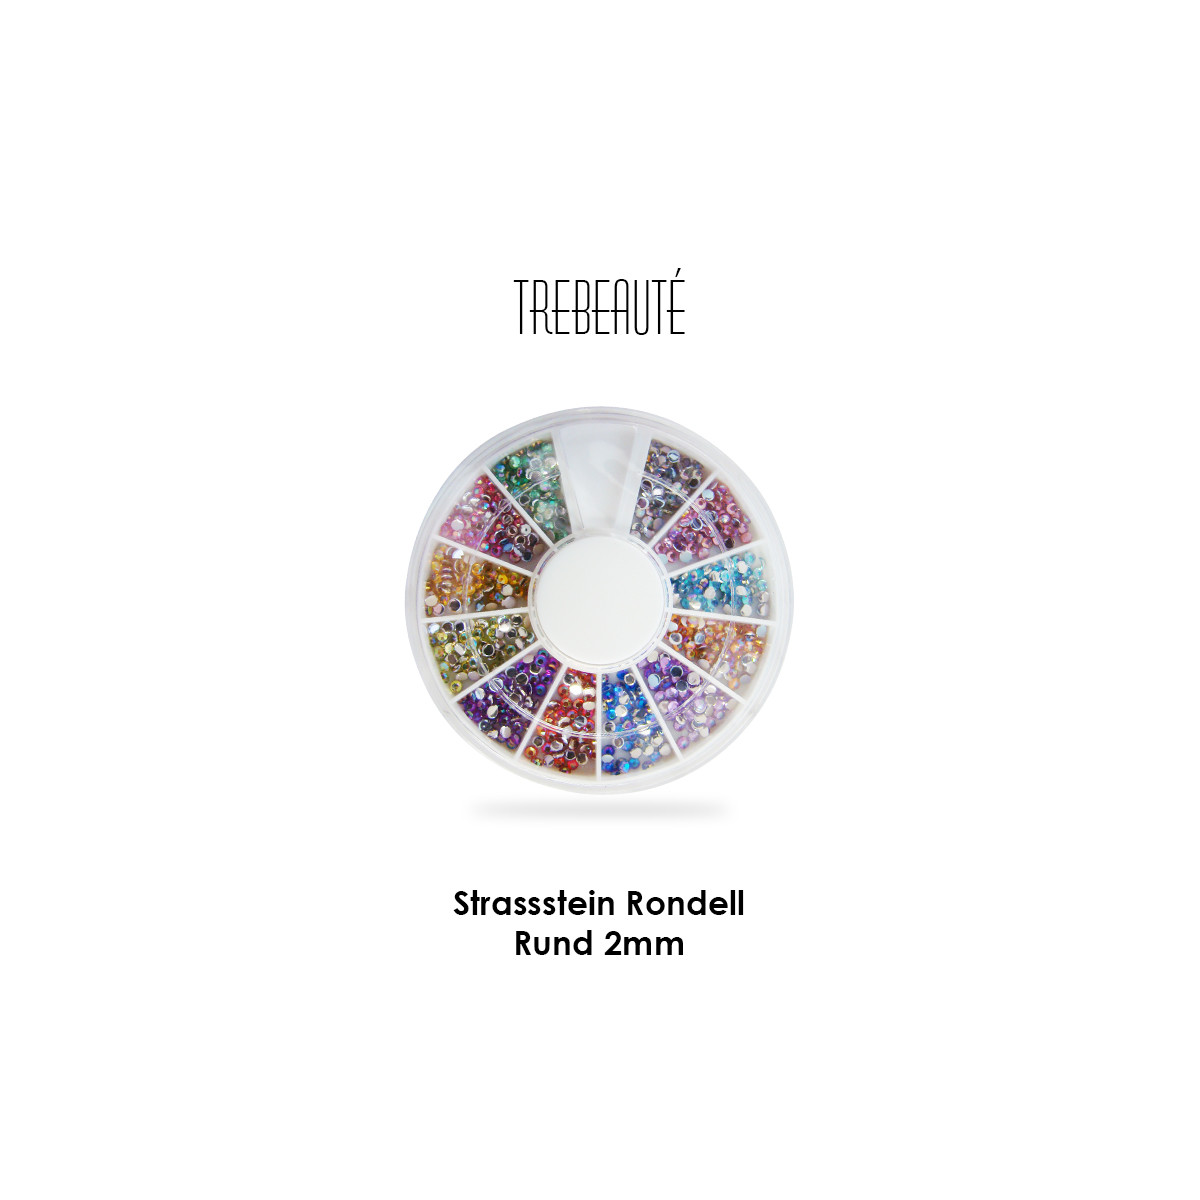 Strassstein Rondell, diverse Farben (Rund, 2mm)